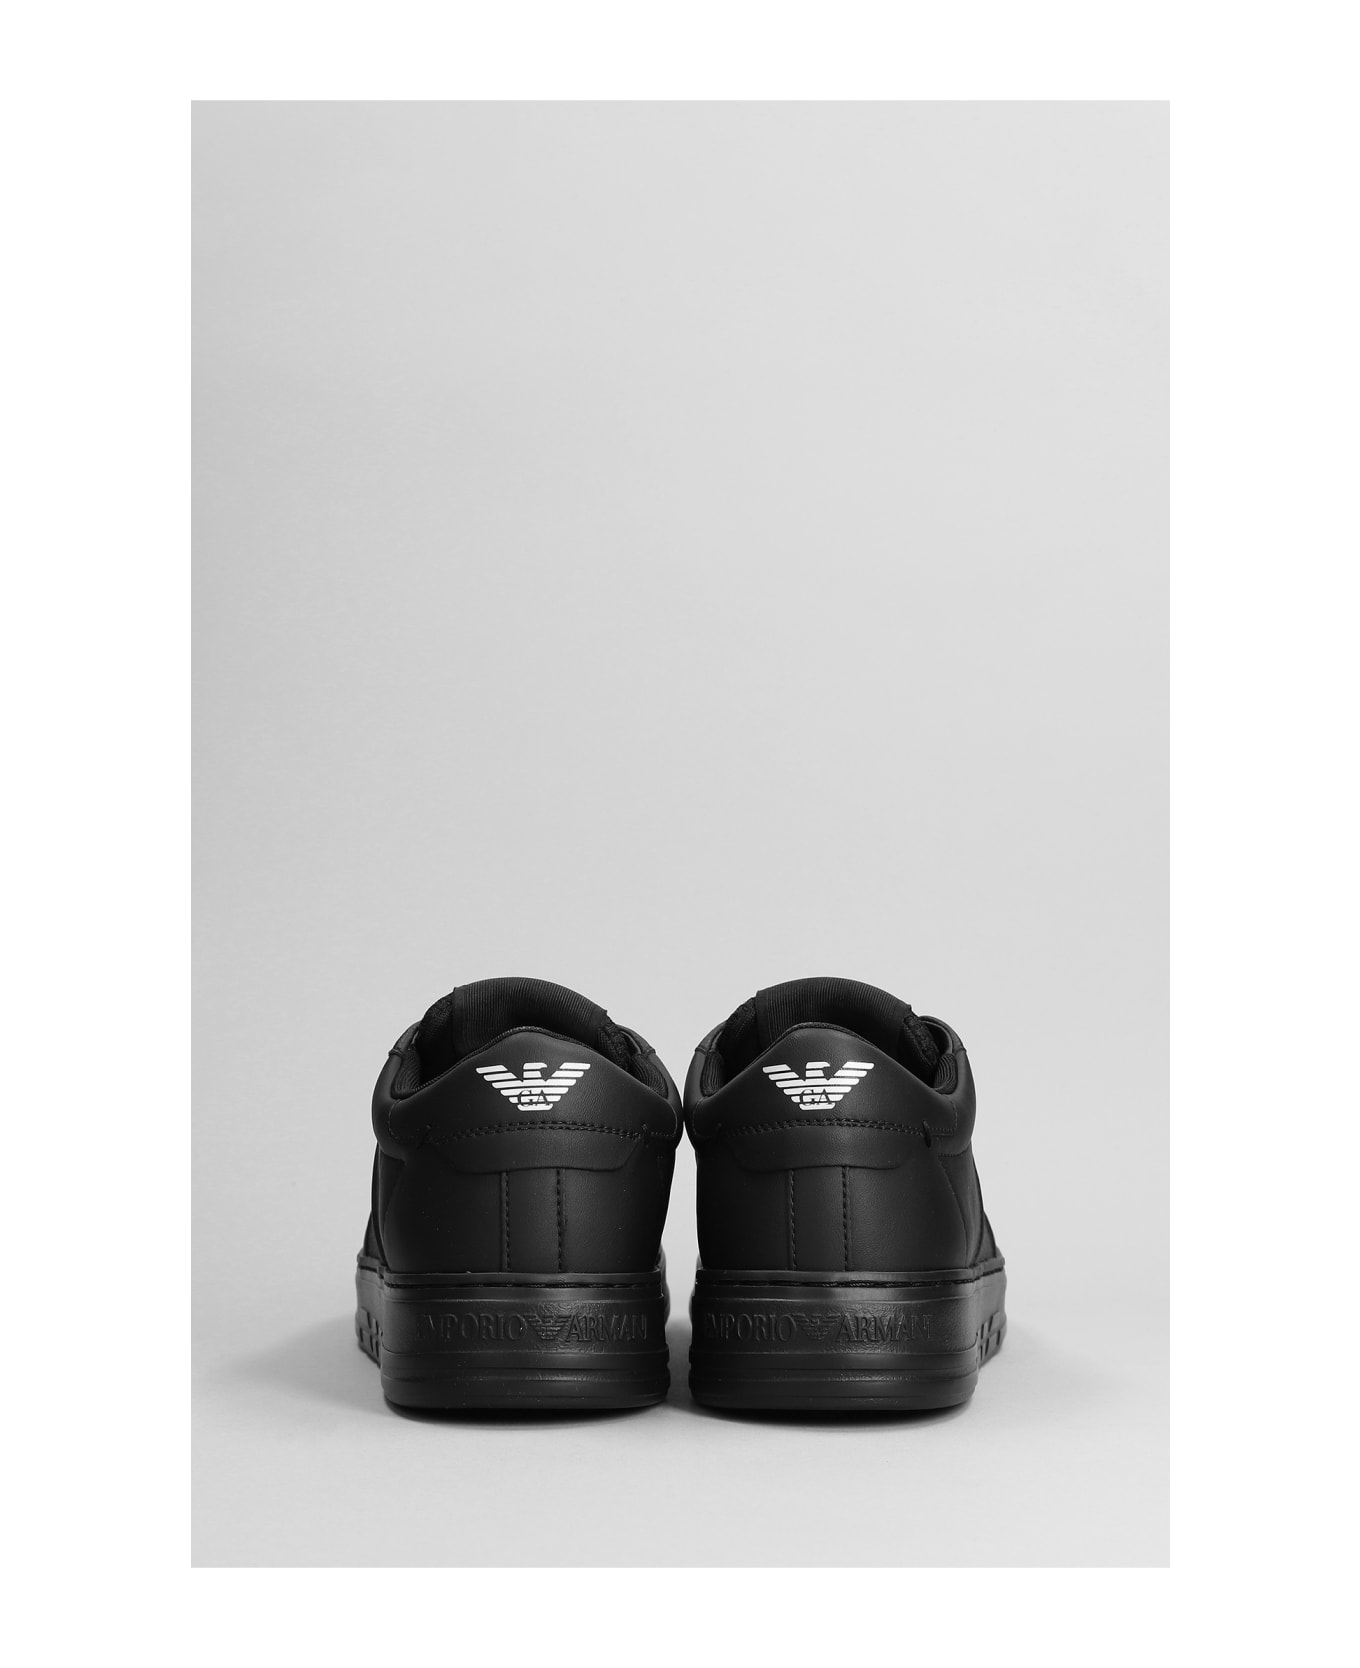 Emporio Armani Sneakers In Black Leather - Black